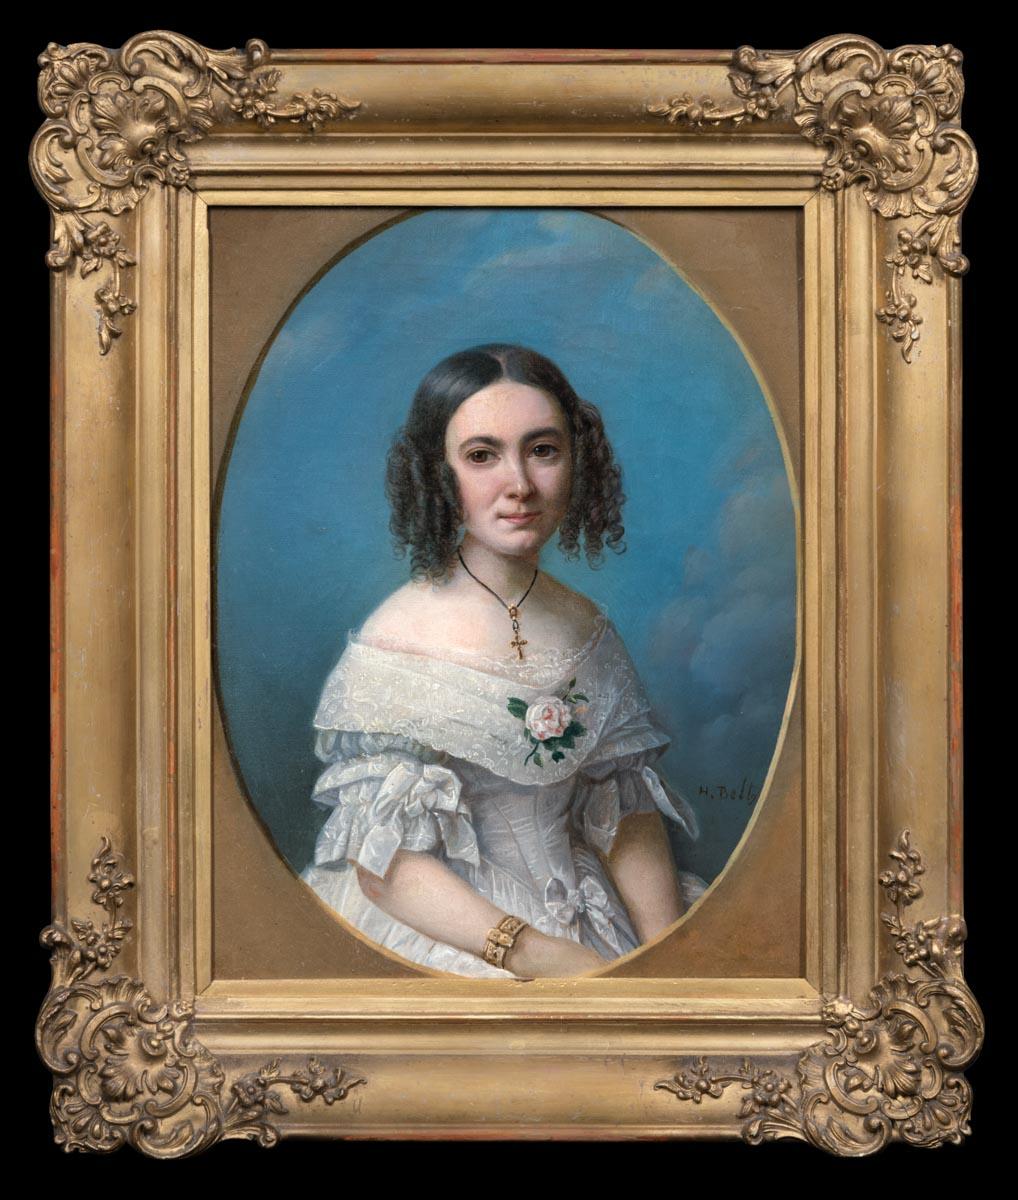 Signiertes Porträt einer jungen Dame im weißen Kleid 1840er Jahre, Ölgemälde auf Leinwand – Painting von Heinrich Beltz